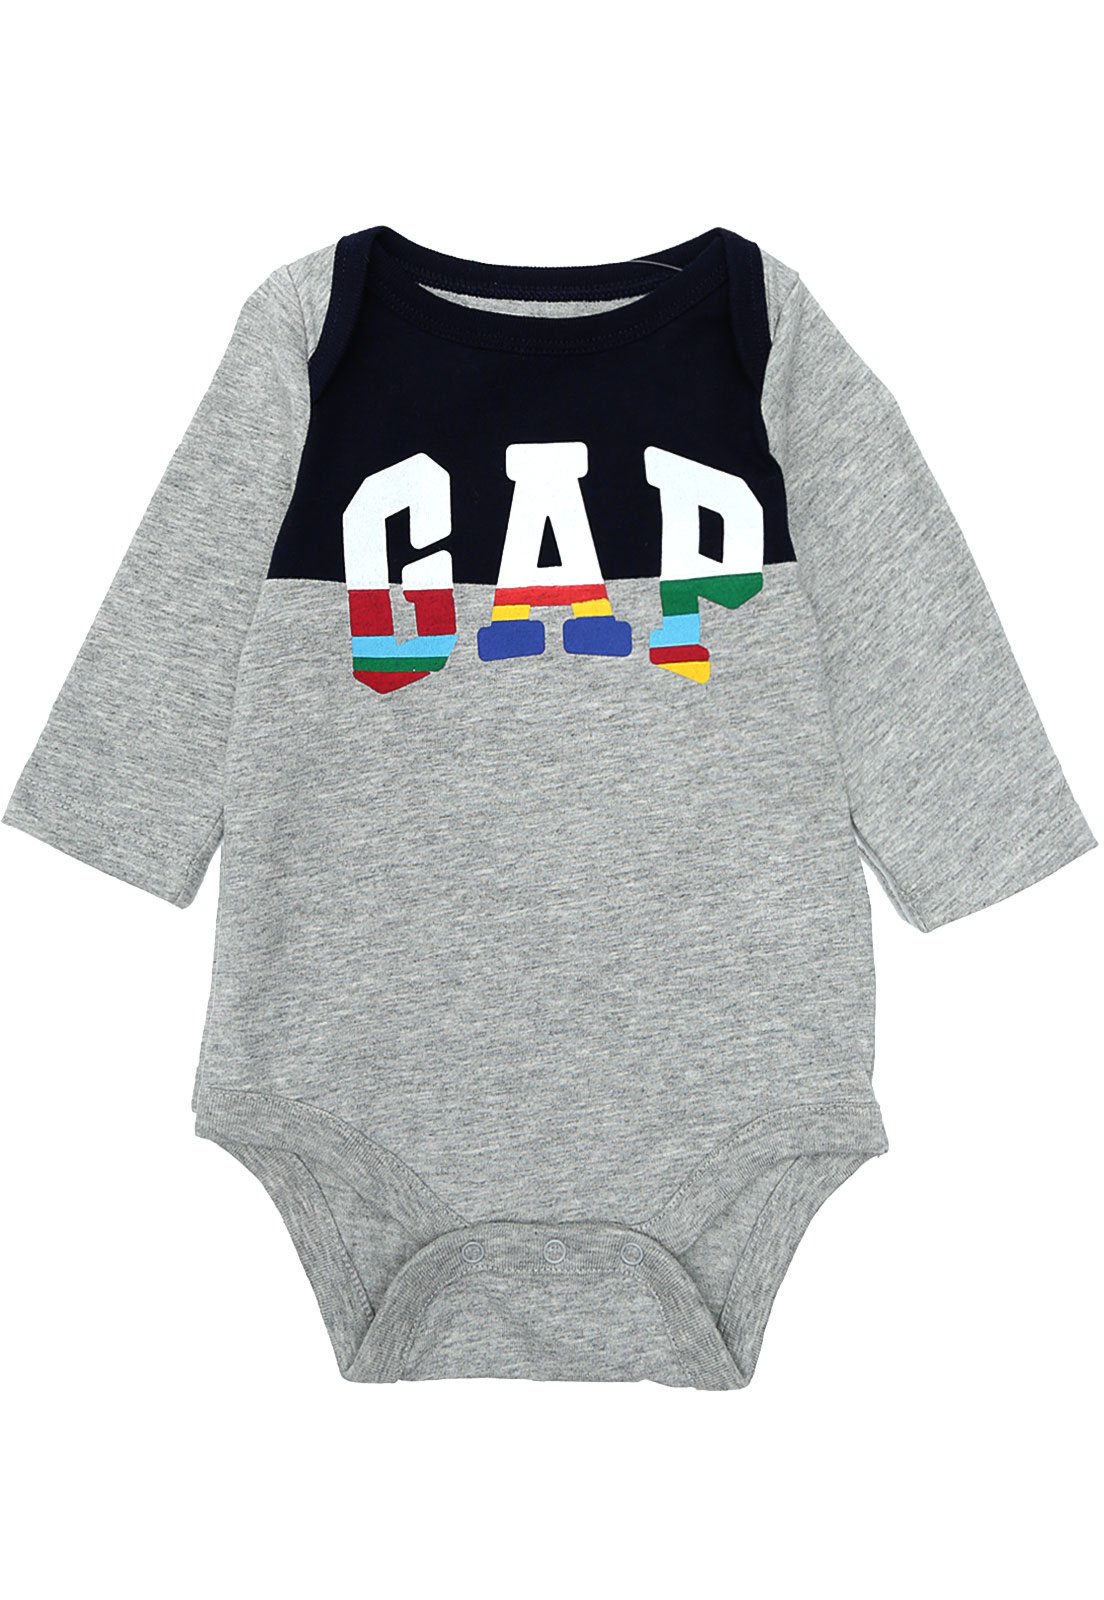 Body de Bebê e Shorts: Gap